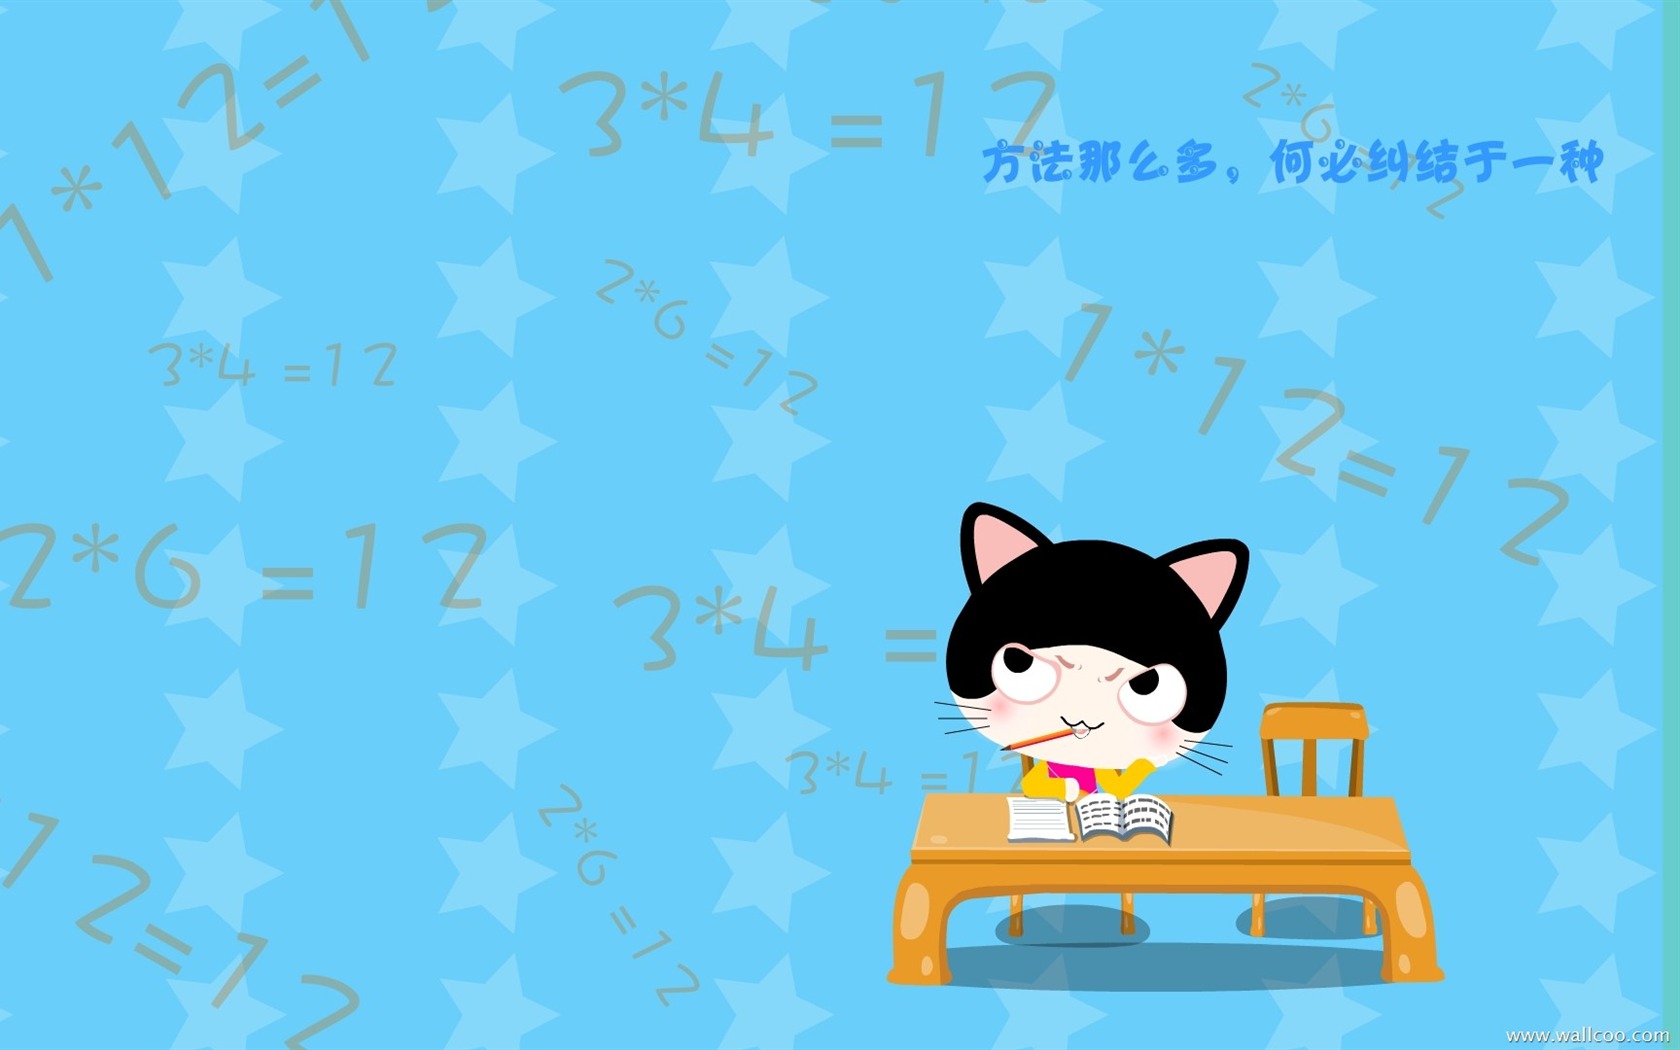 猫咪宝贝 卡通壁纸(四)3 - 1680x1050